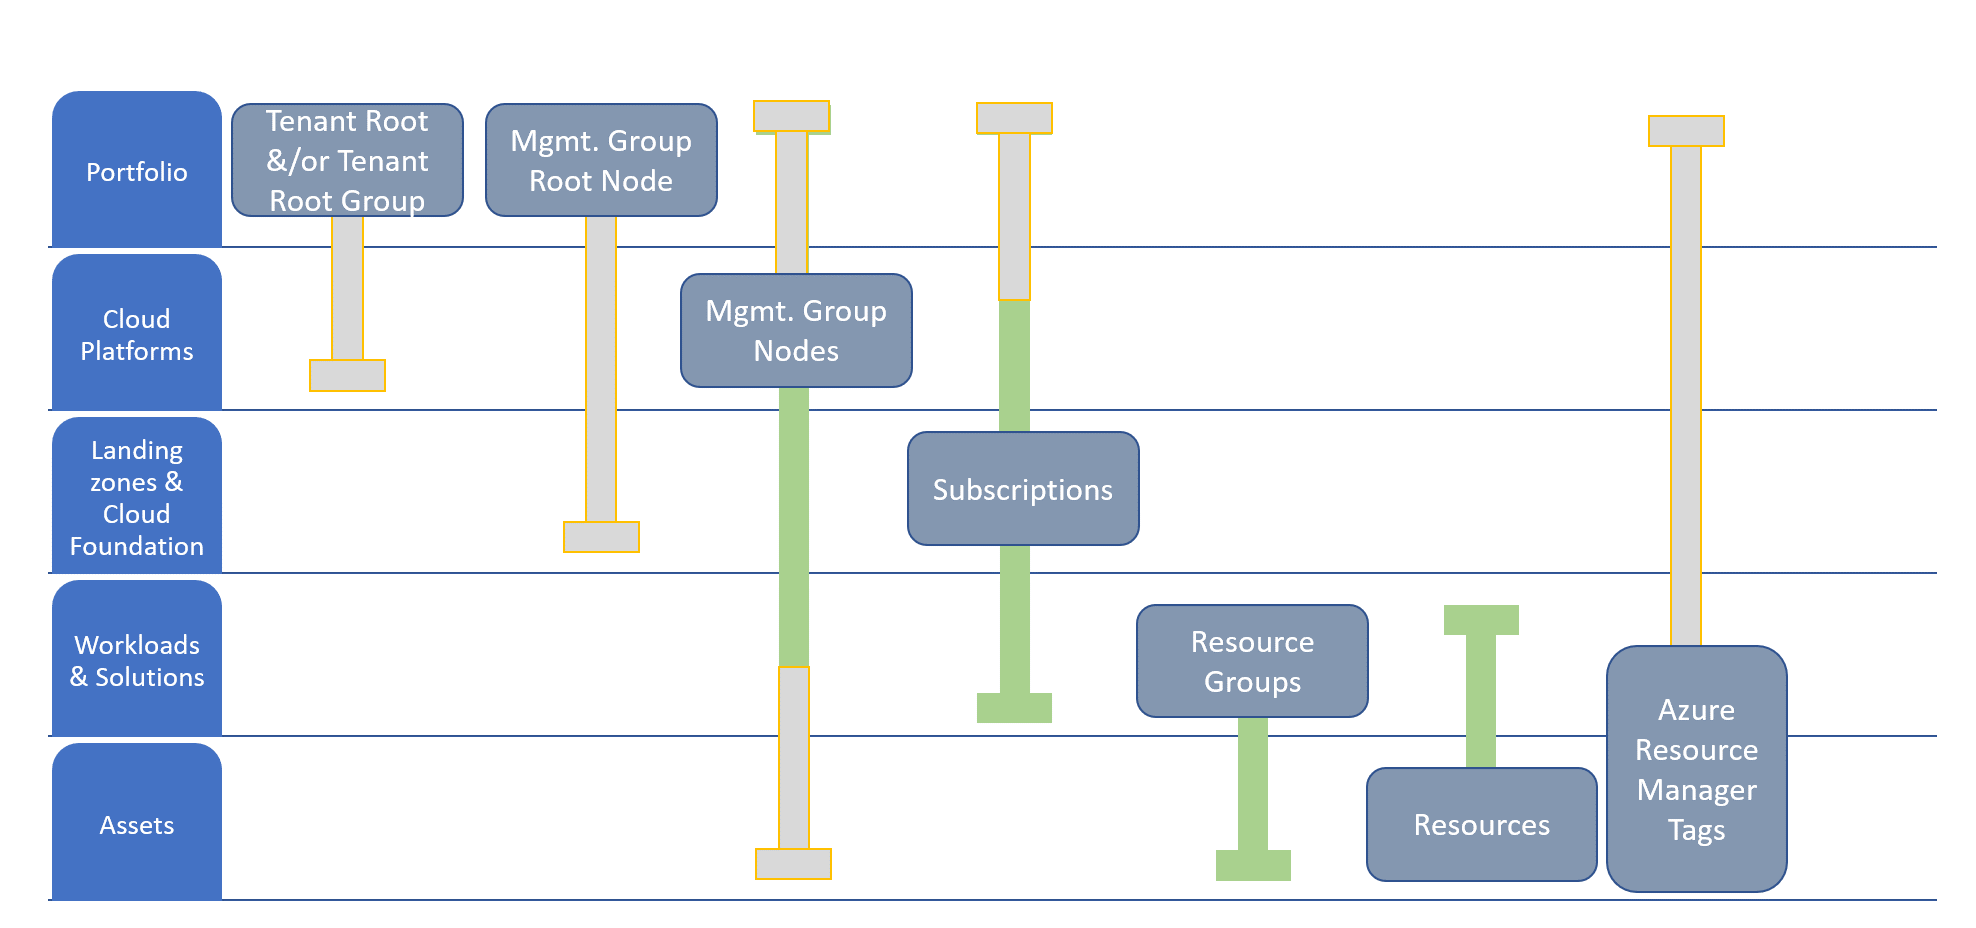 Organização de recursos alinhada com a hierarquia